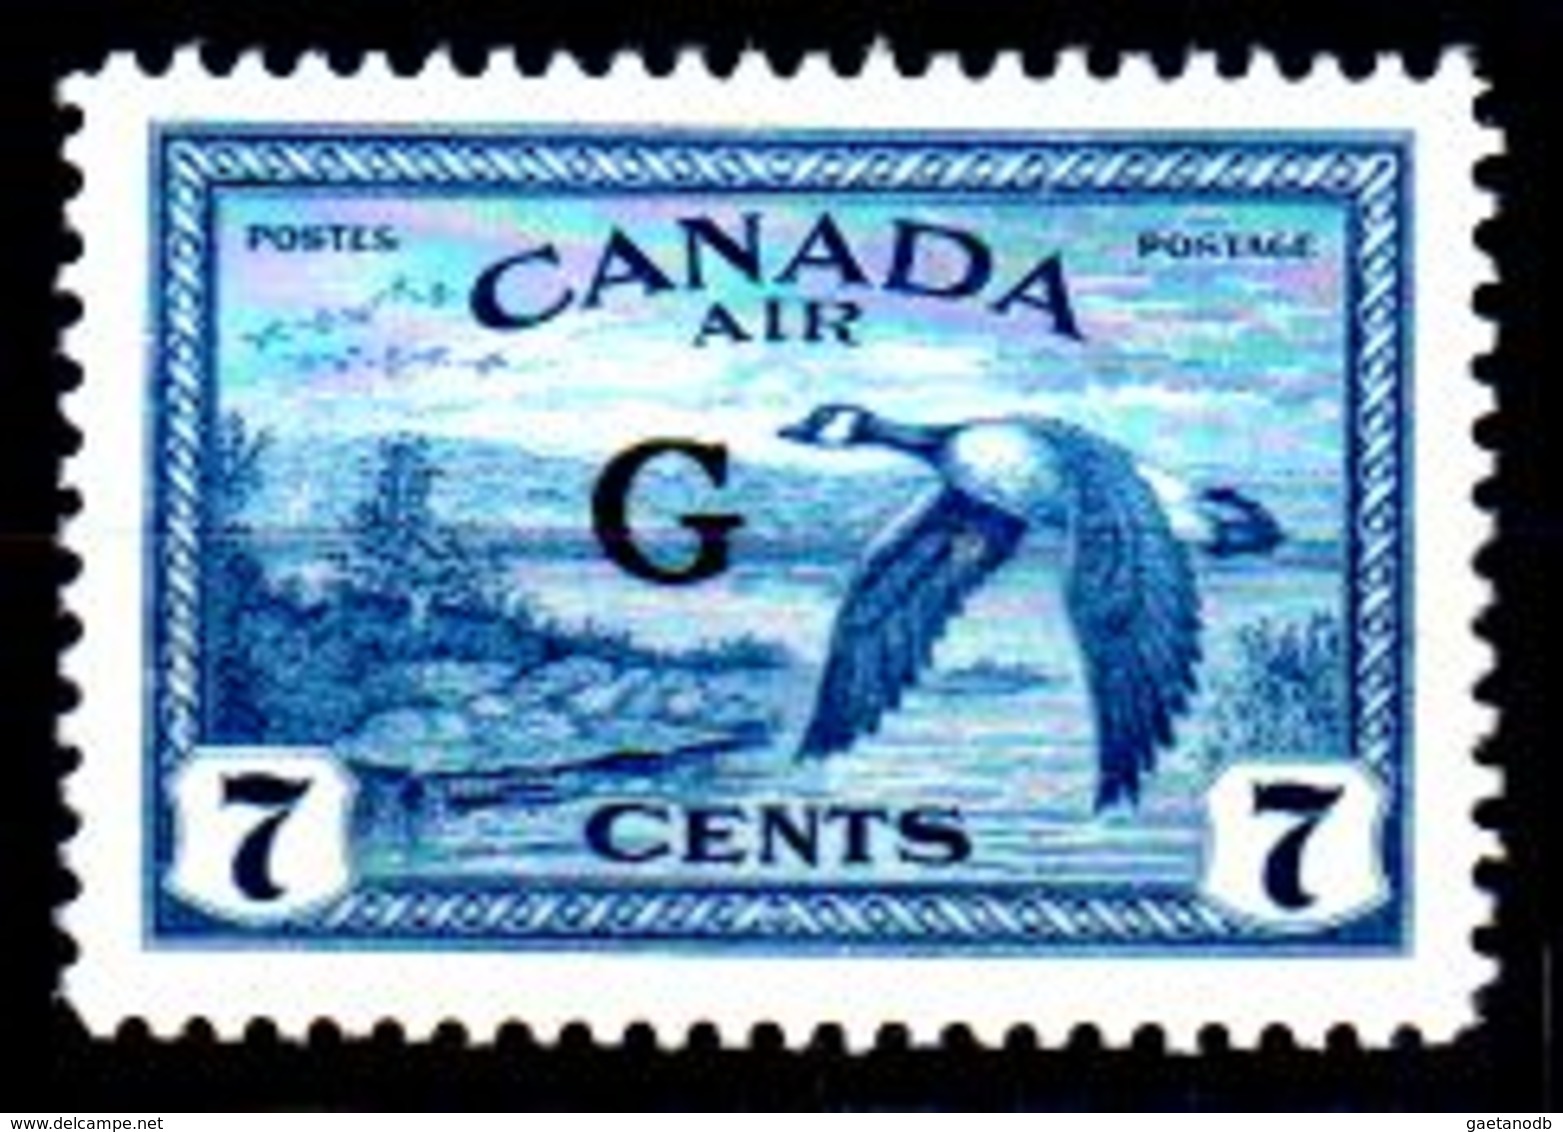 B364-Canada: SERVIZI 1950-52 (++) MNH - Senza Difetti Occulti - - Surchargés